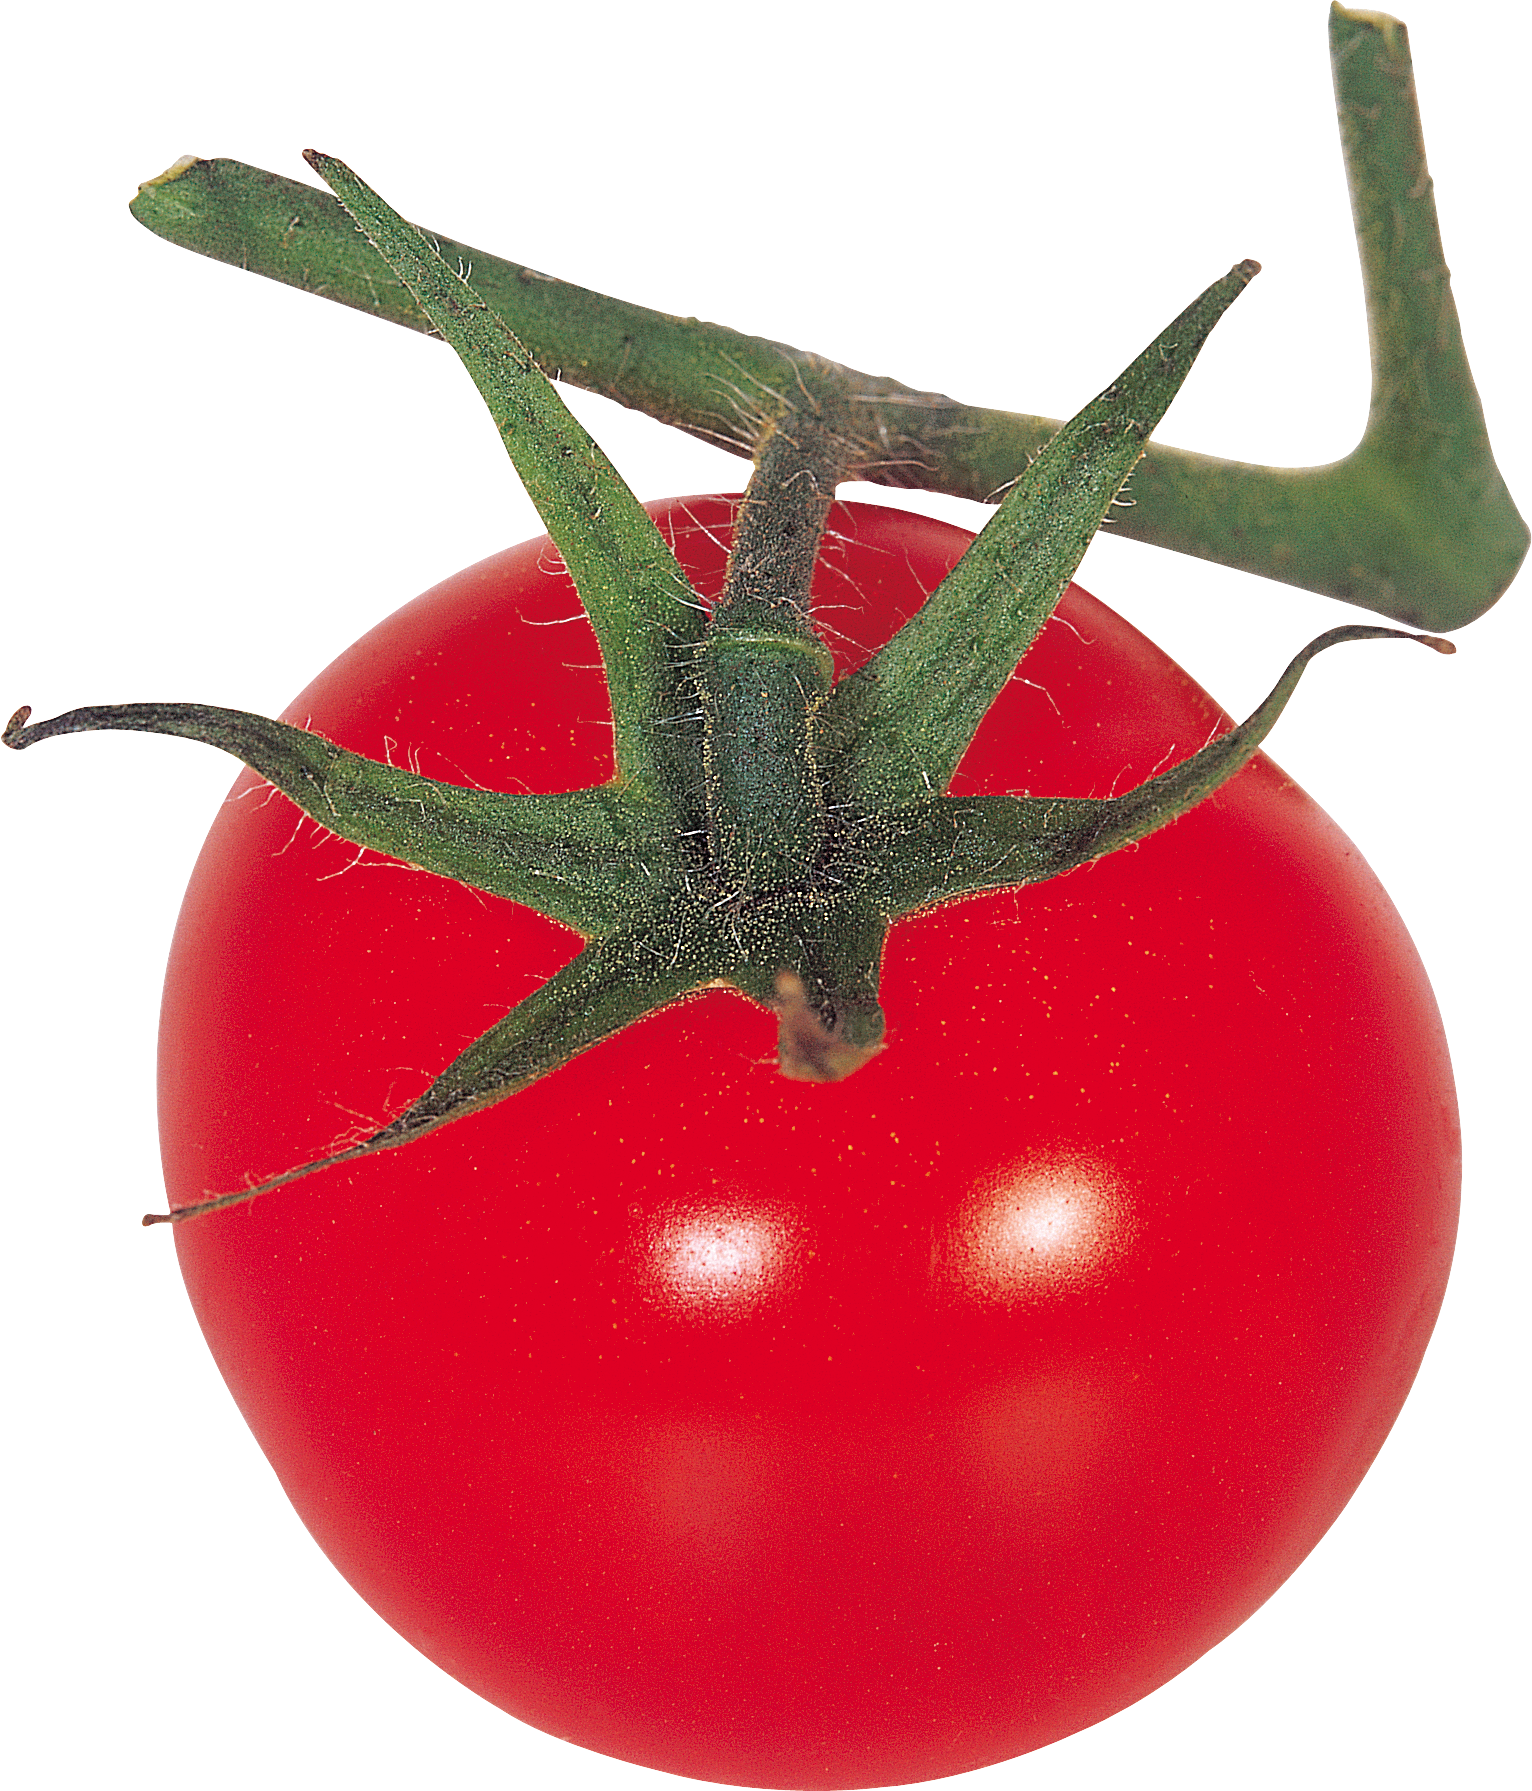 Cà chua trên cành